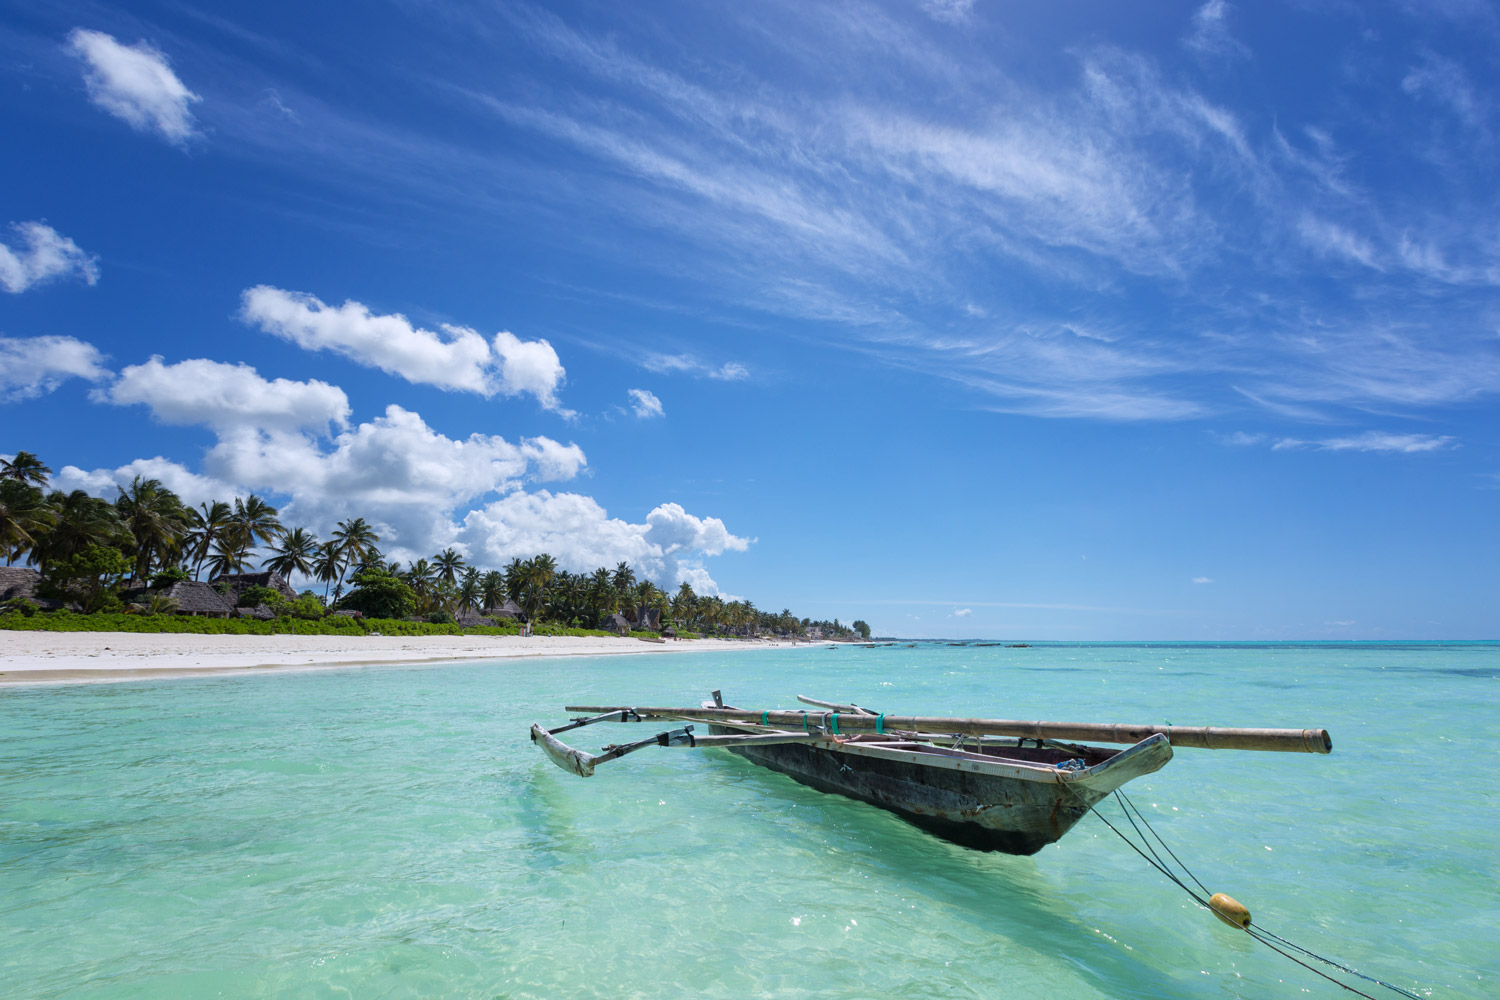 From Zanzibar: Tales of an Introvert